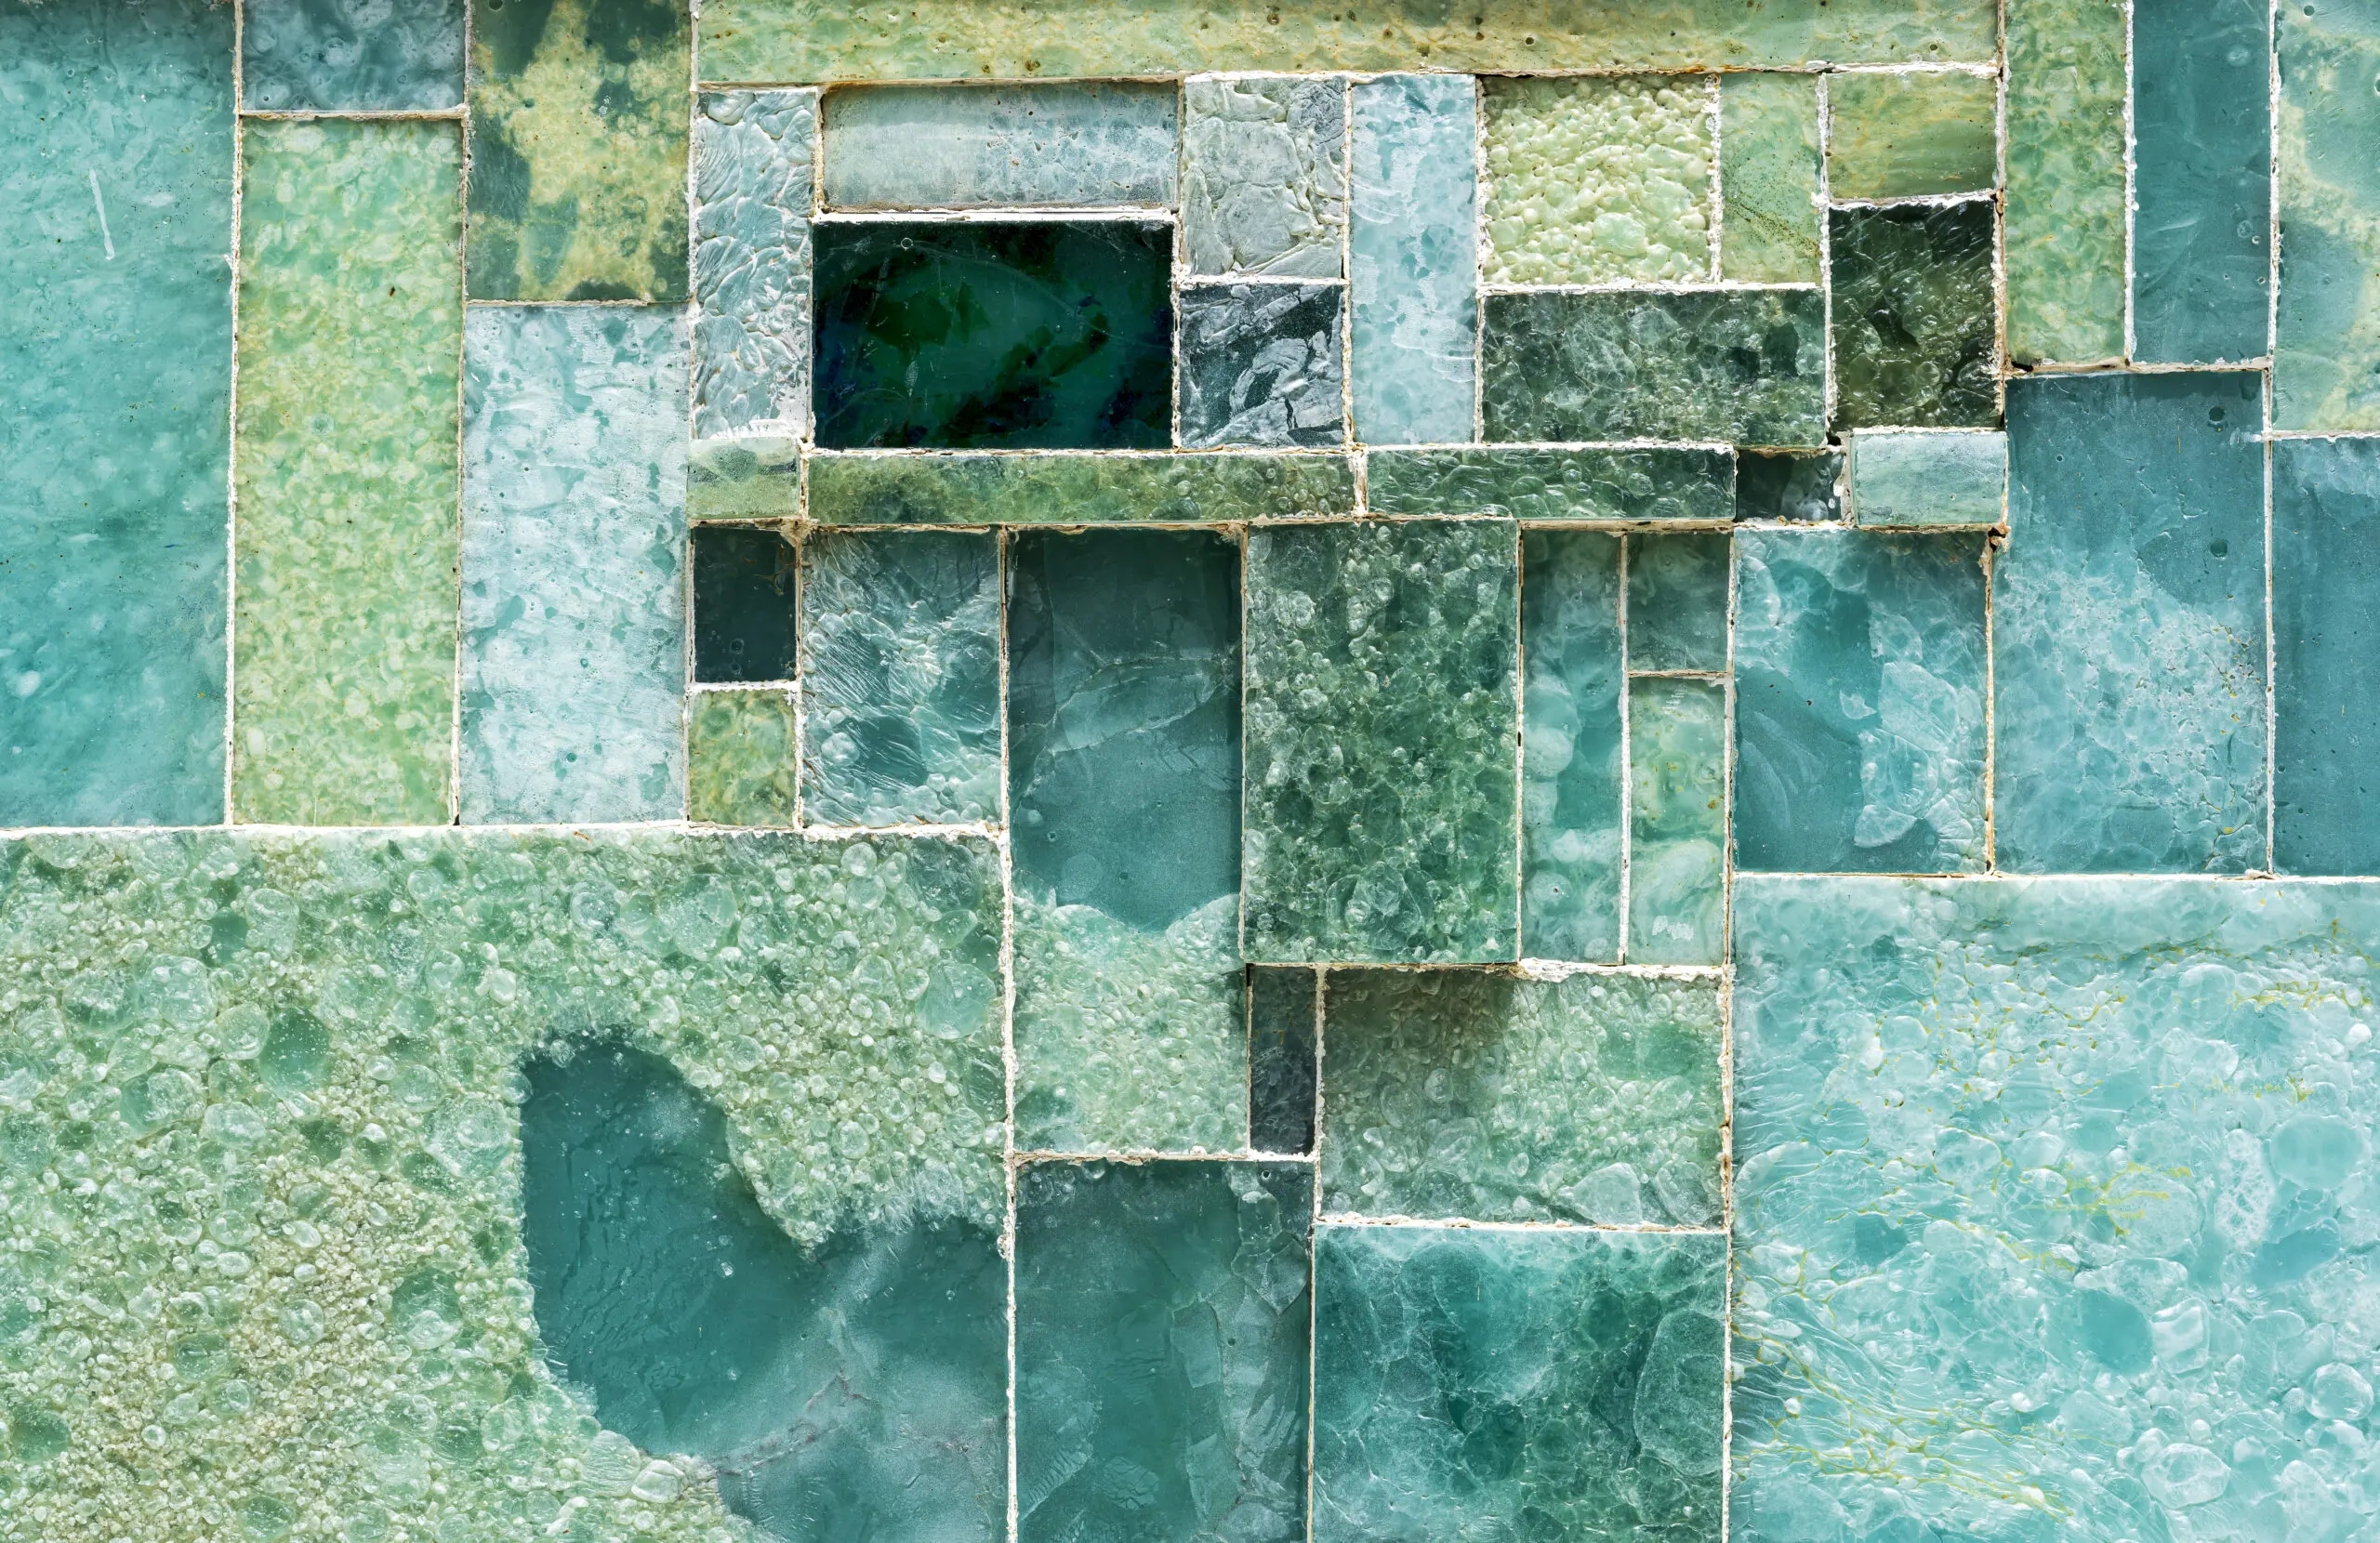 Wandbild (5885) Mosaik by Judith Grote präsentiert: Kreatives,Details und Strukturen,Abstrakt,Natur,Makro,Steine,Sonstige Naturdetails